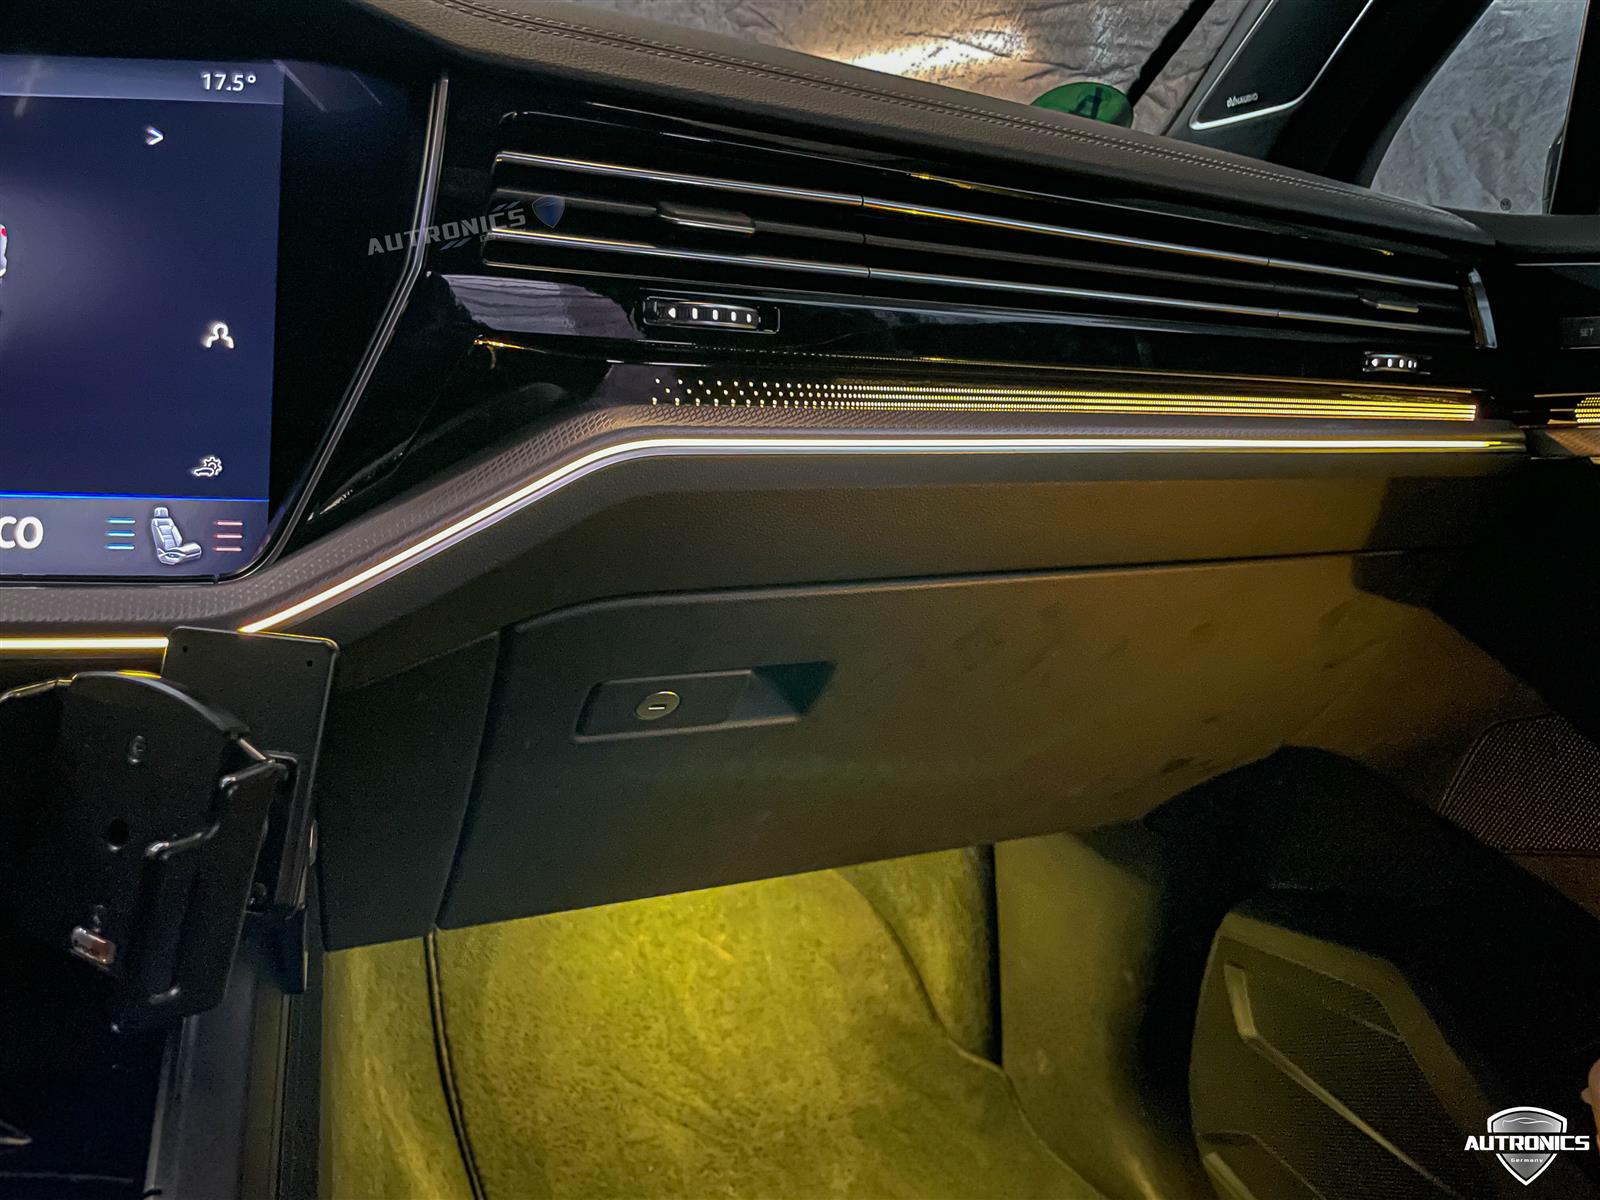 Ambientebeleuchtung Nachrüsten im Auto Innenraumbeleuchtung Beleuchtung geeignet für VW Tiguan 2. Generation (2017-2021) 64 Farben - 02